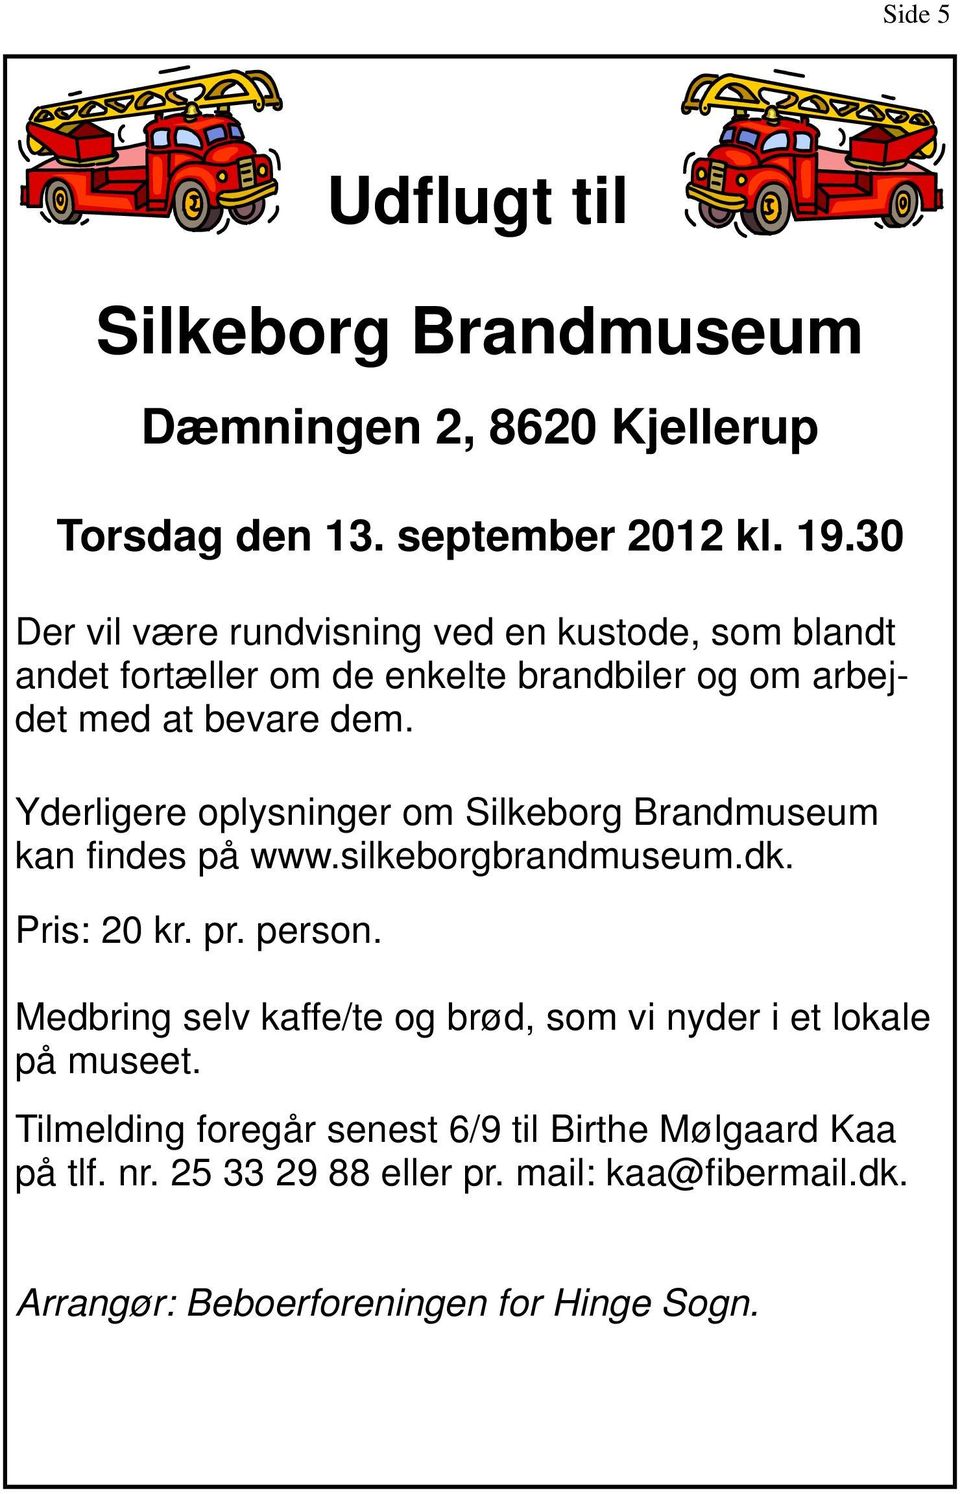 Yderligere oplysninger om Silkeborg Brandmuseum kan findes på www.silkeborgbrandmuseum.dk. Pris: 20 kr. pr. person.